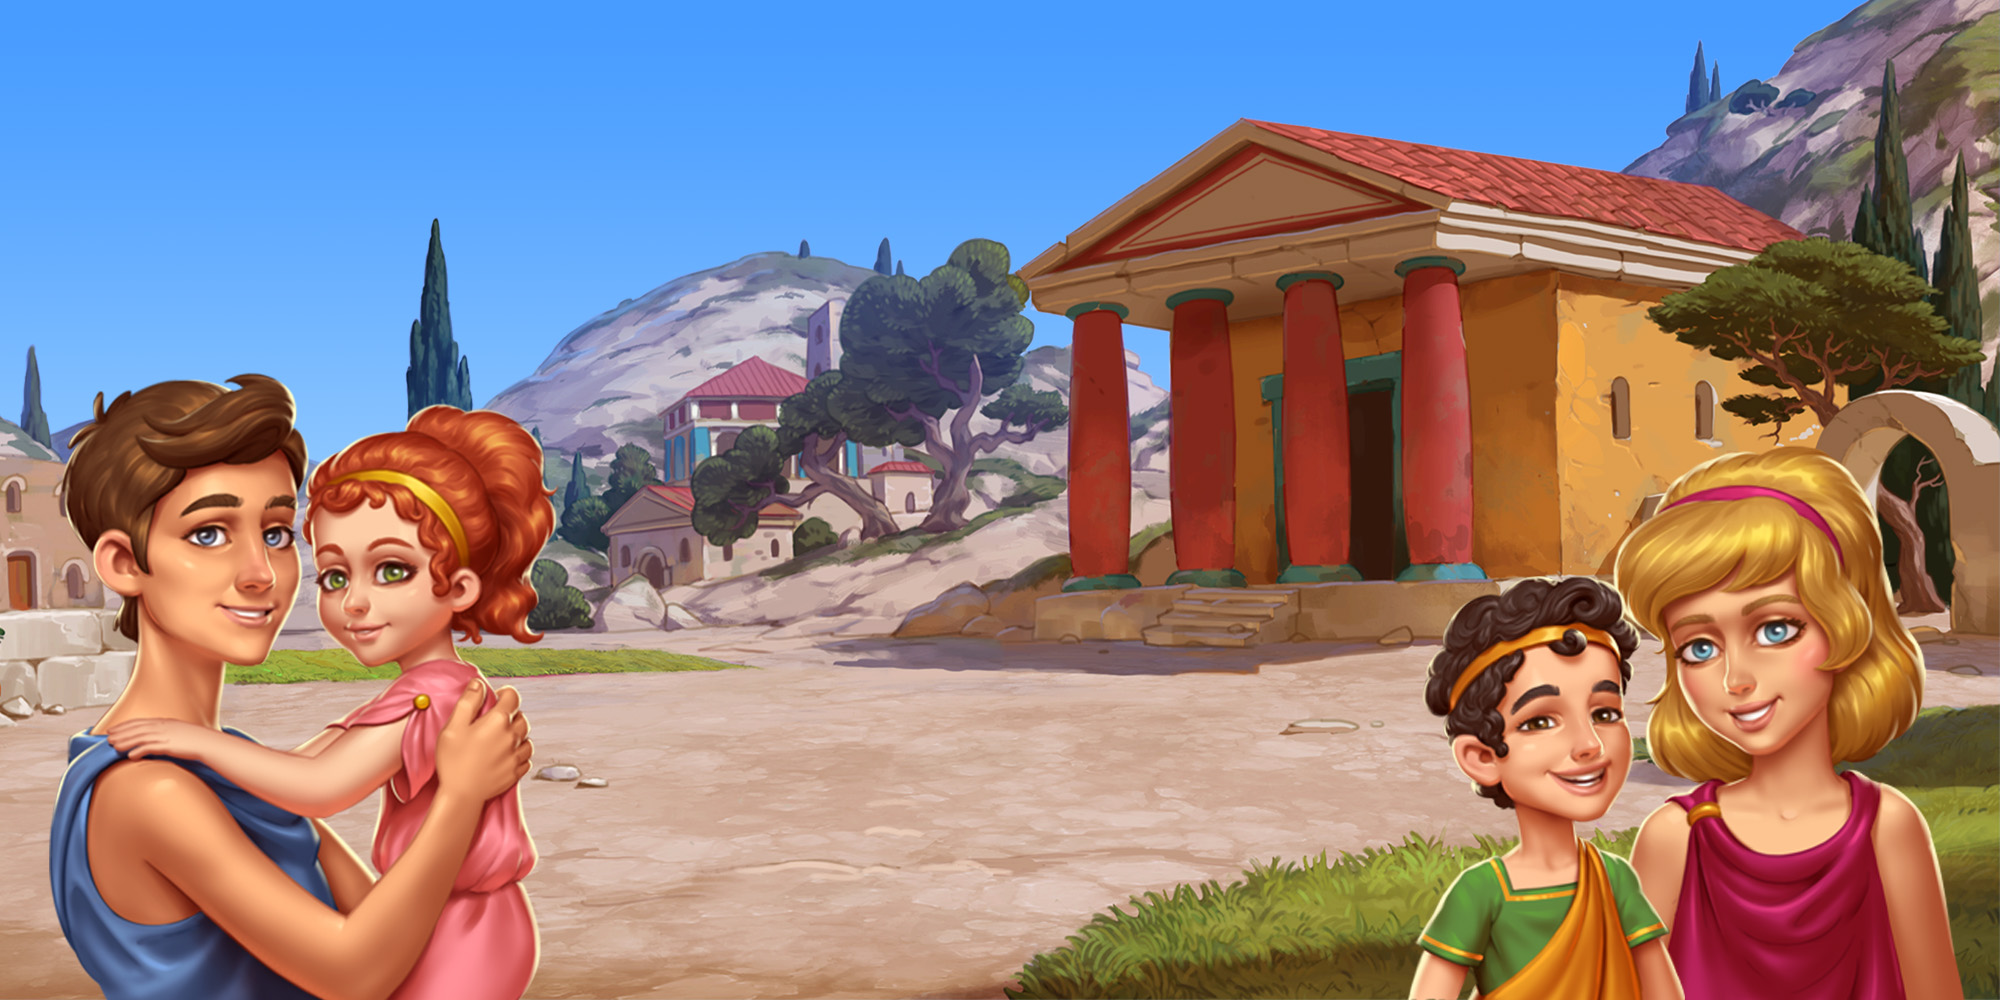 Kids of Hellas: Back to Olympus